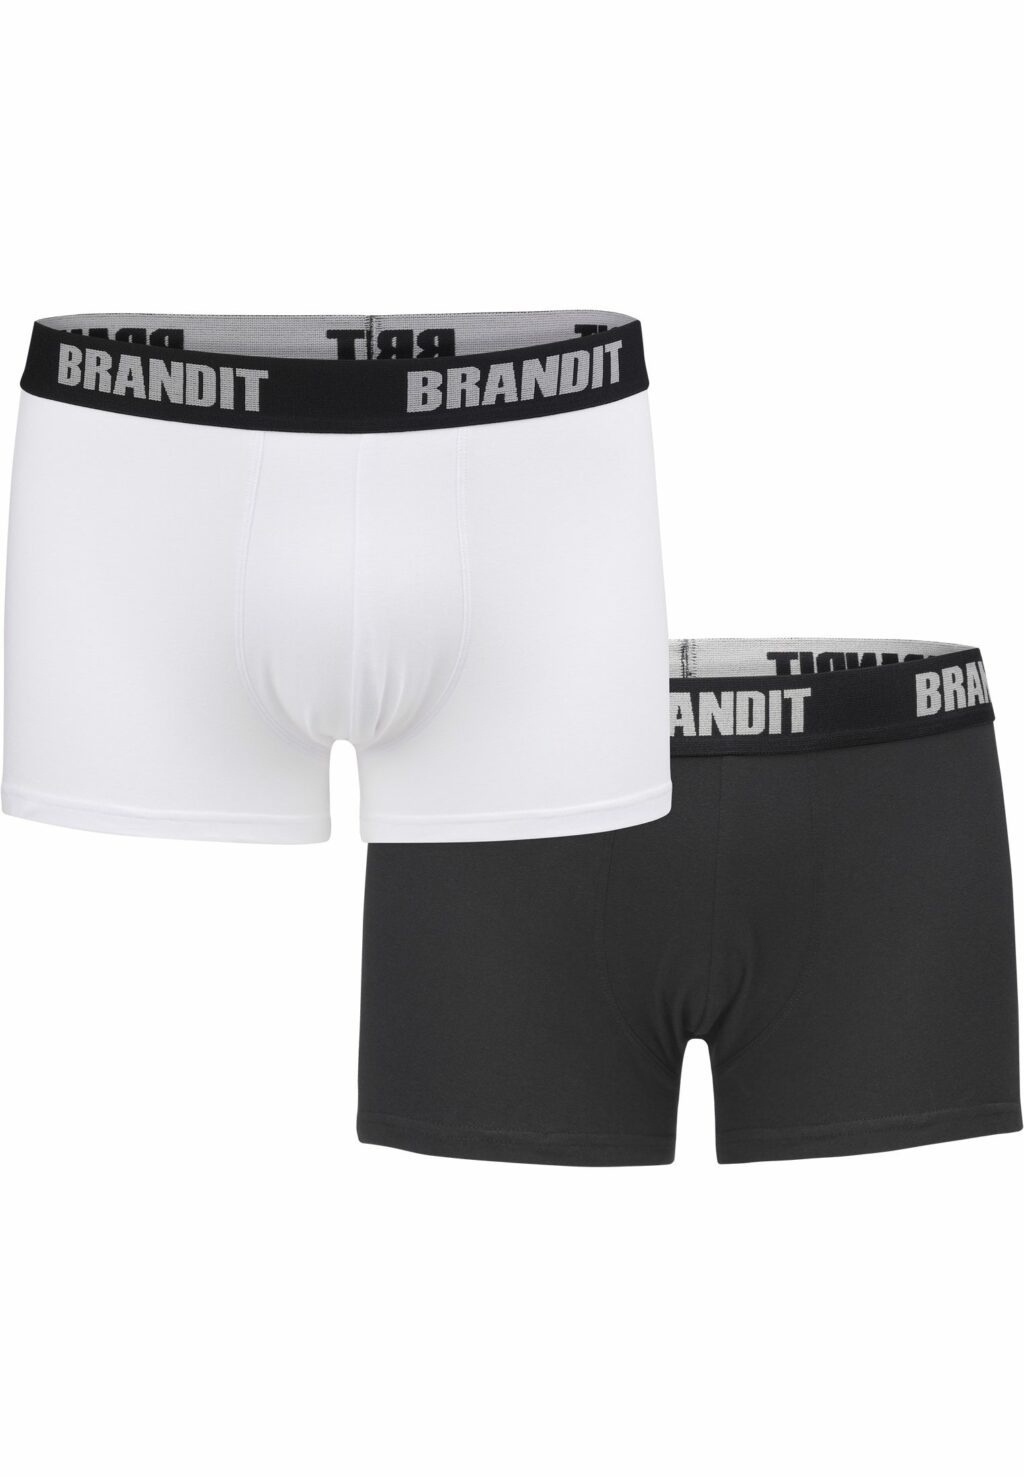 Brandit Boxershorts Logo 2er Pack wht/blk BD4501